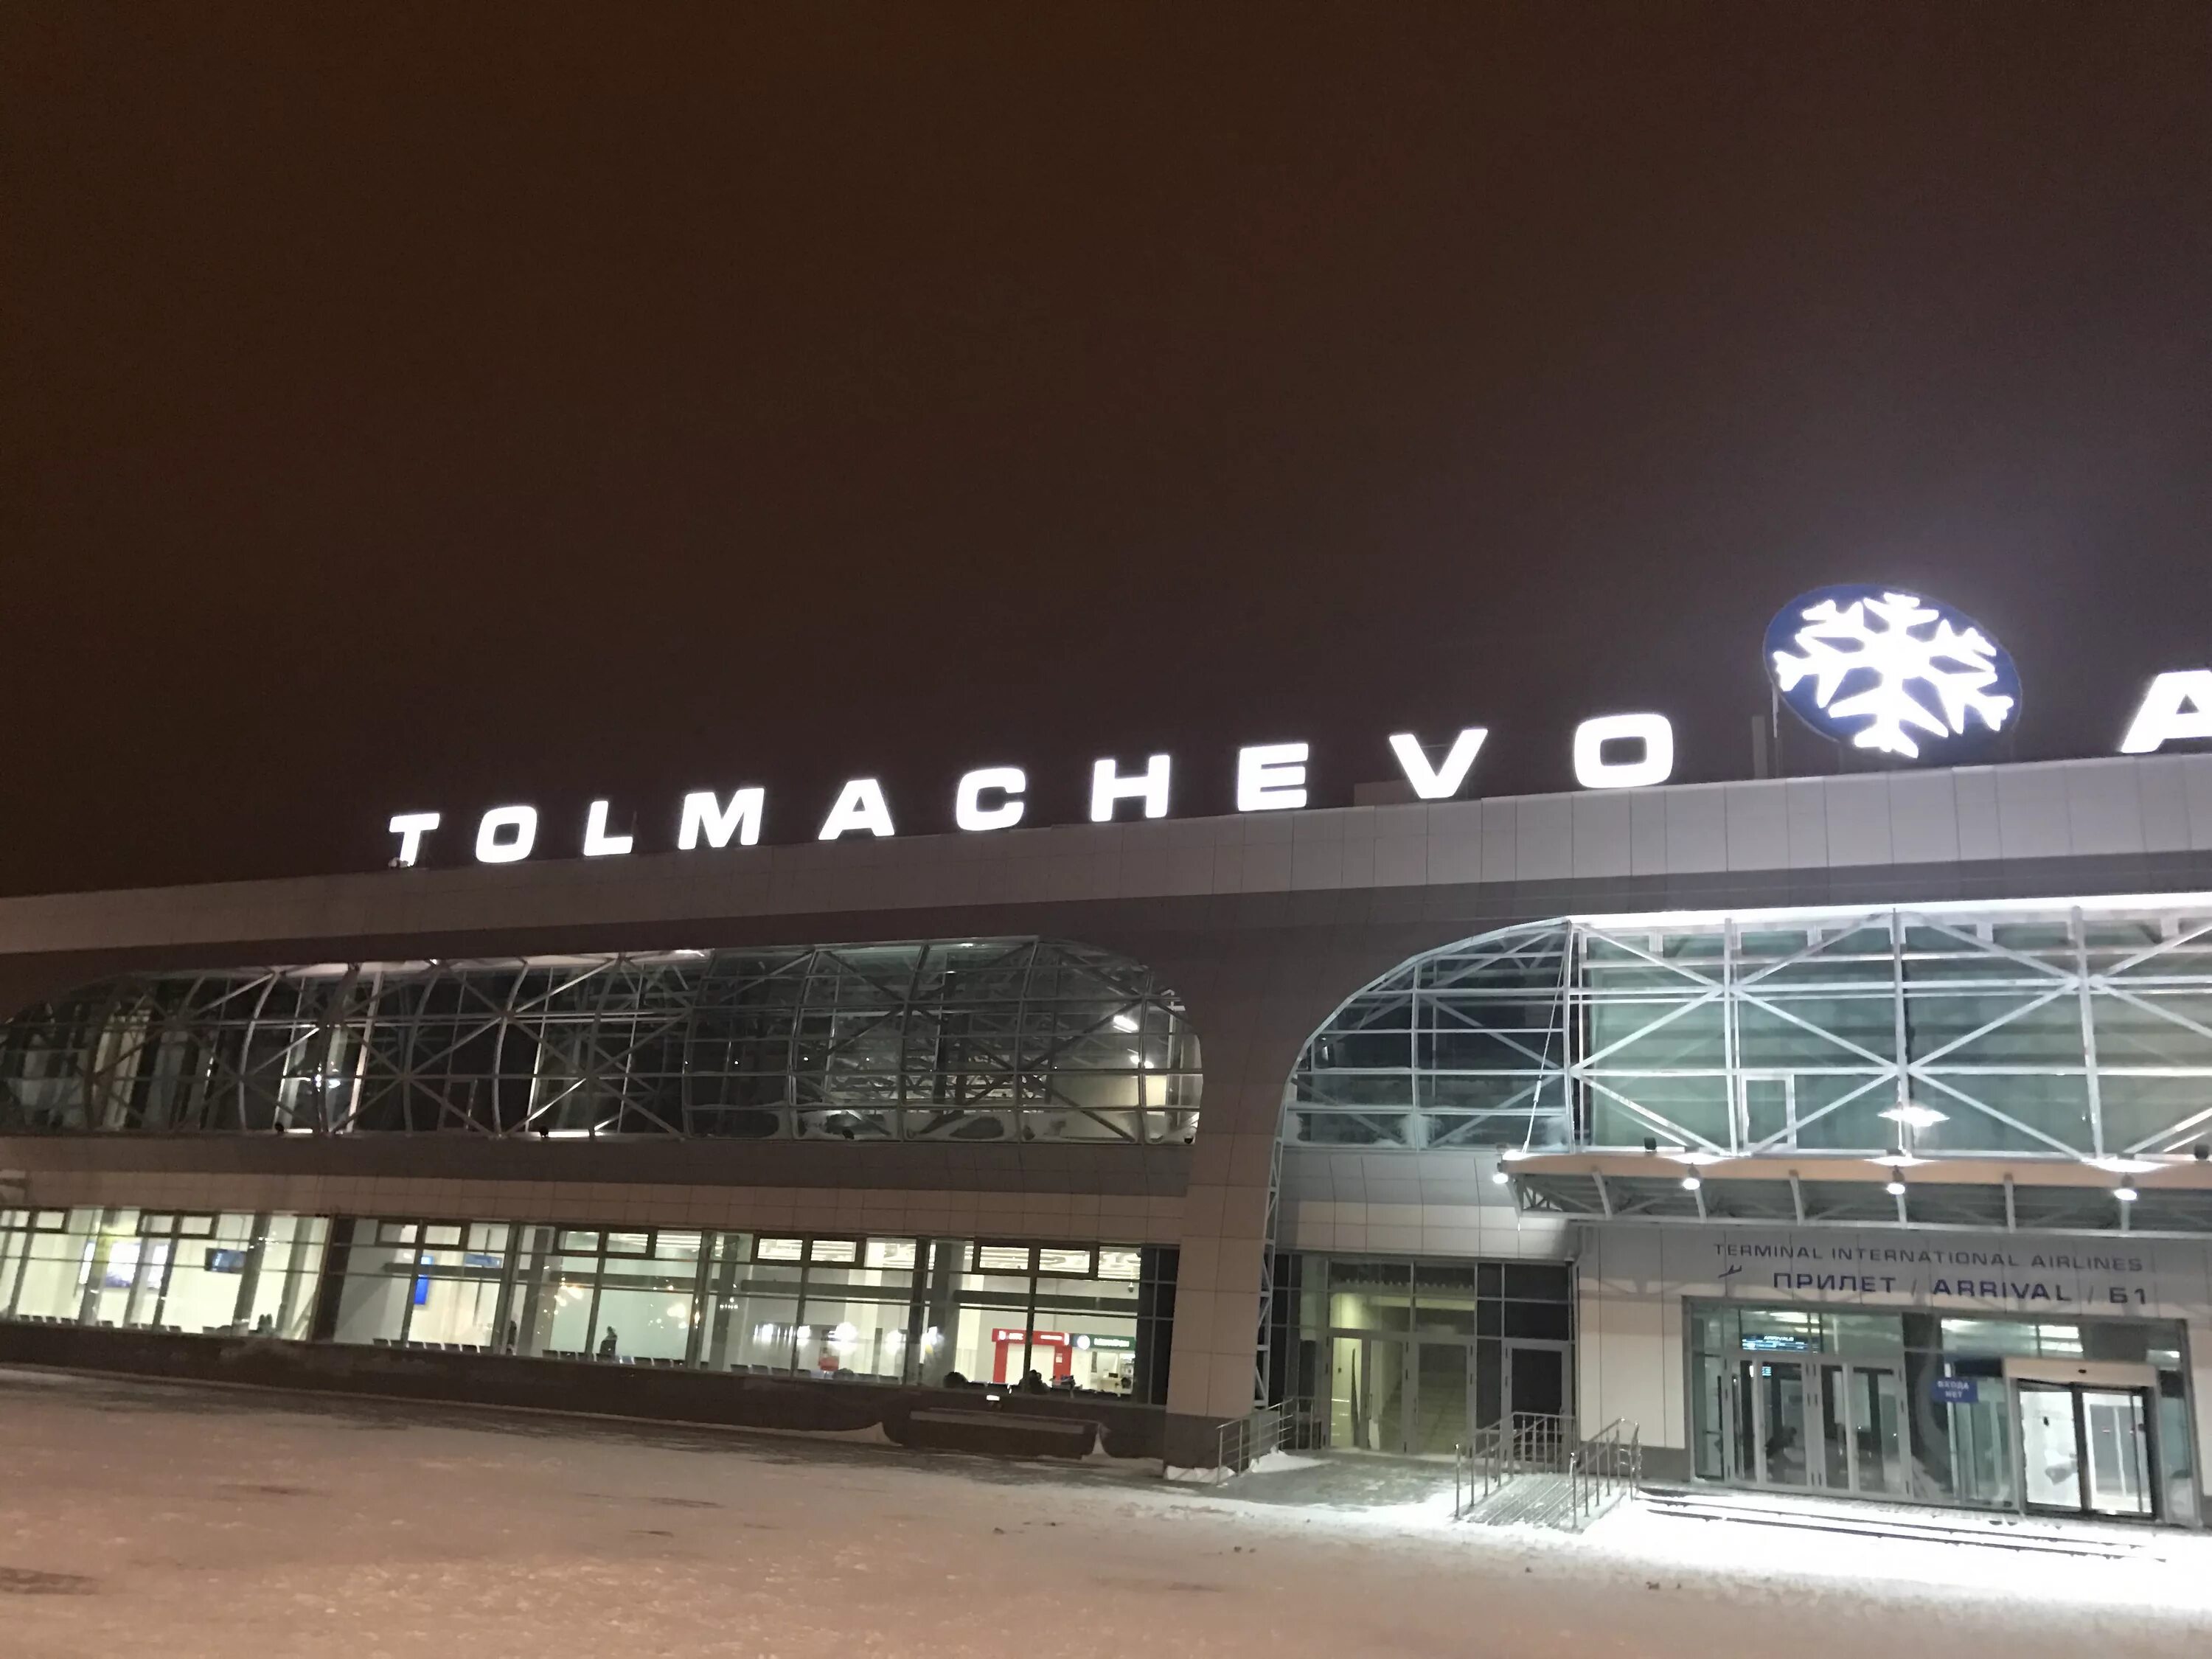 Аэропорт Толмачево Новосибирск зима. Аэропорт толмачёво Новосибирск зимой. Аэропорт Толмачево Новосибирск им Покрышкина. Толмачева аэропорт зима. Справочная аэропорта новосибирск